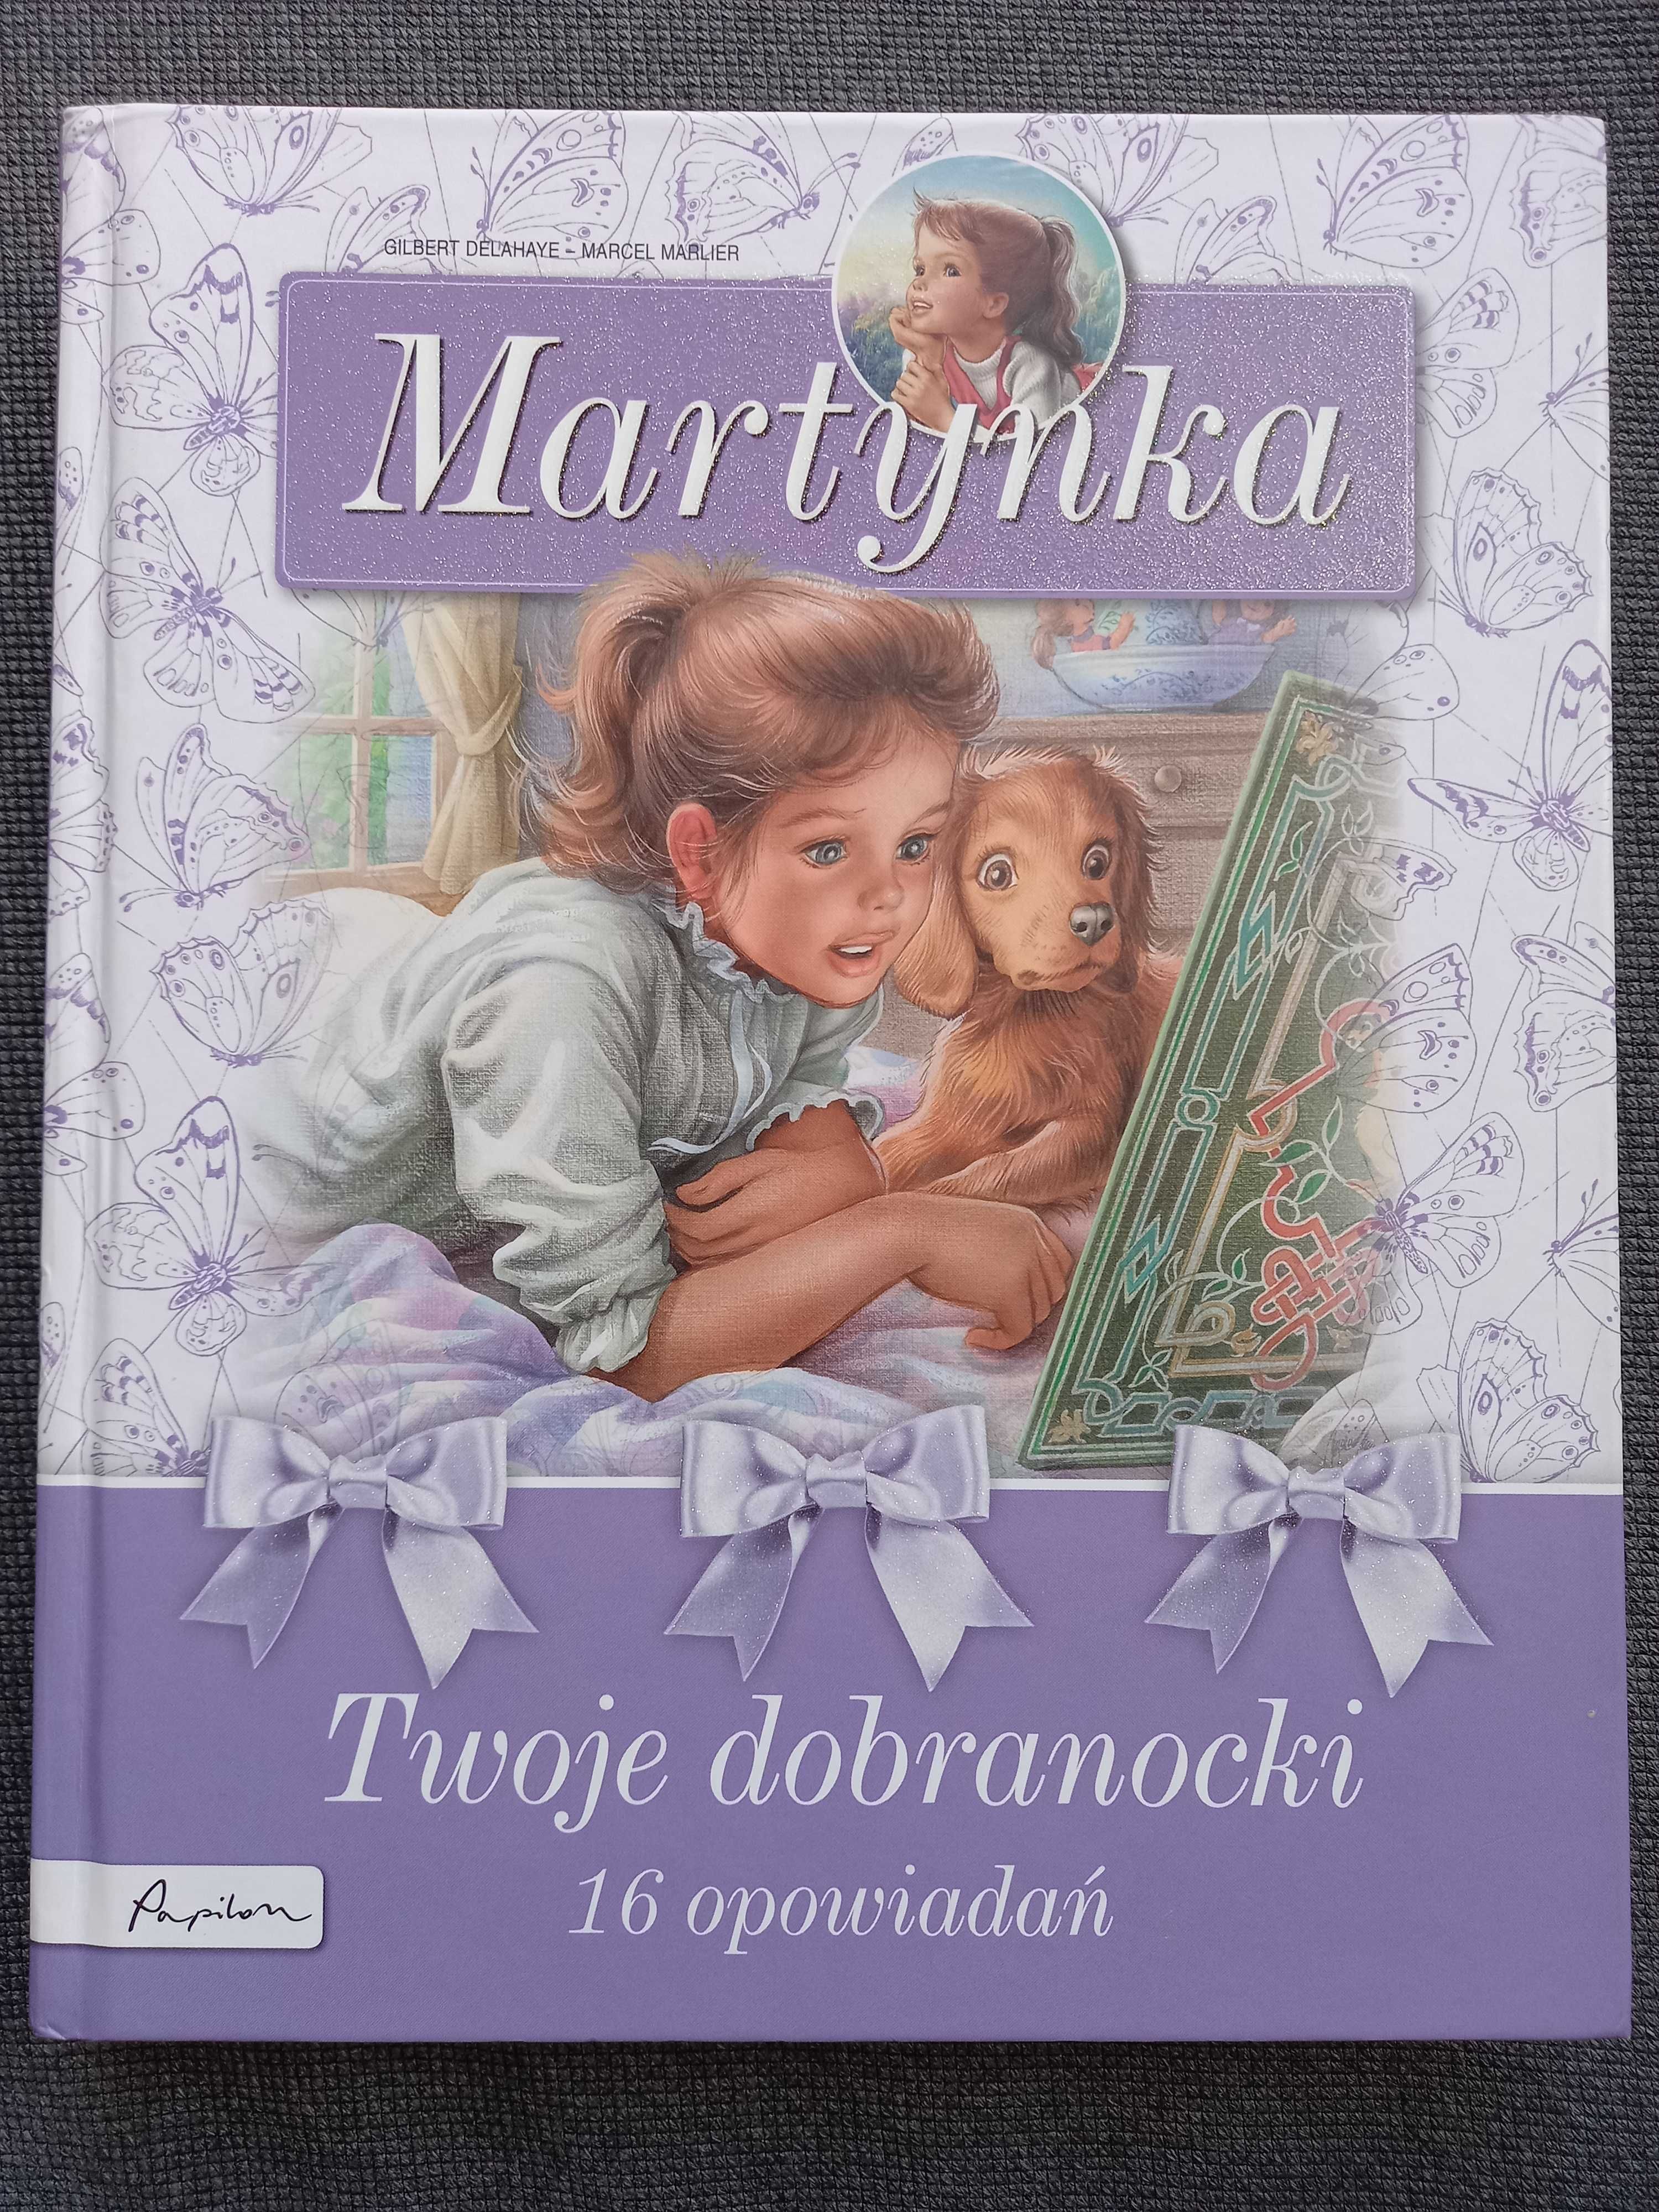 Martynka- Twoje dobranocki- 16 opowiadań,  320 stron